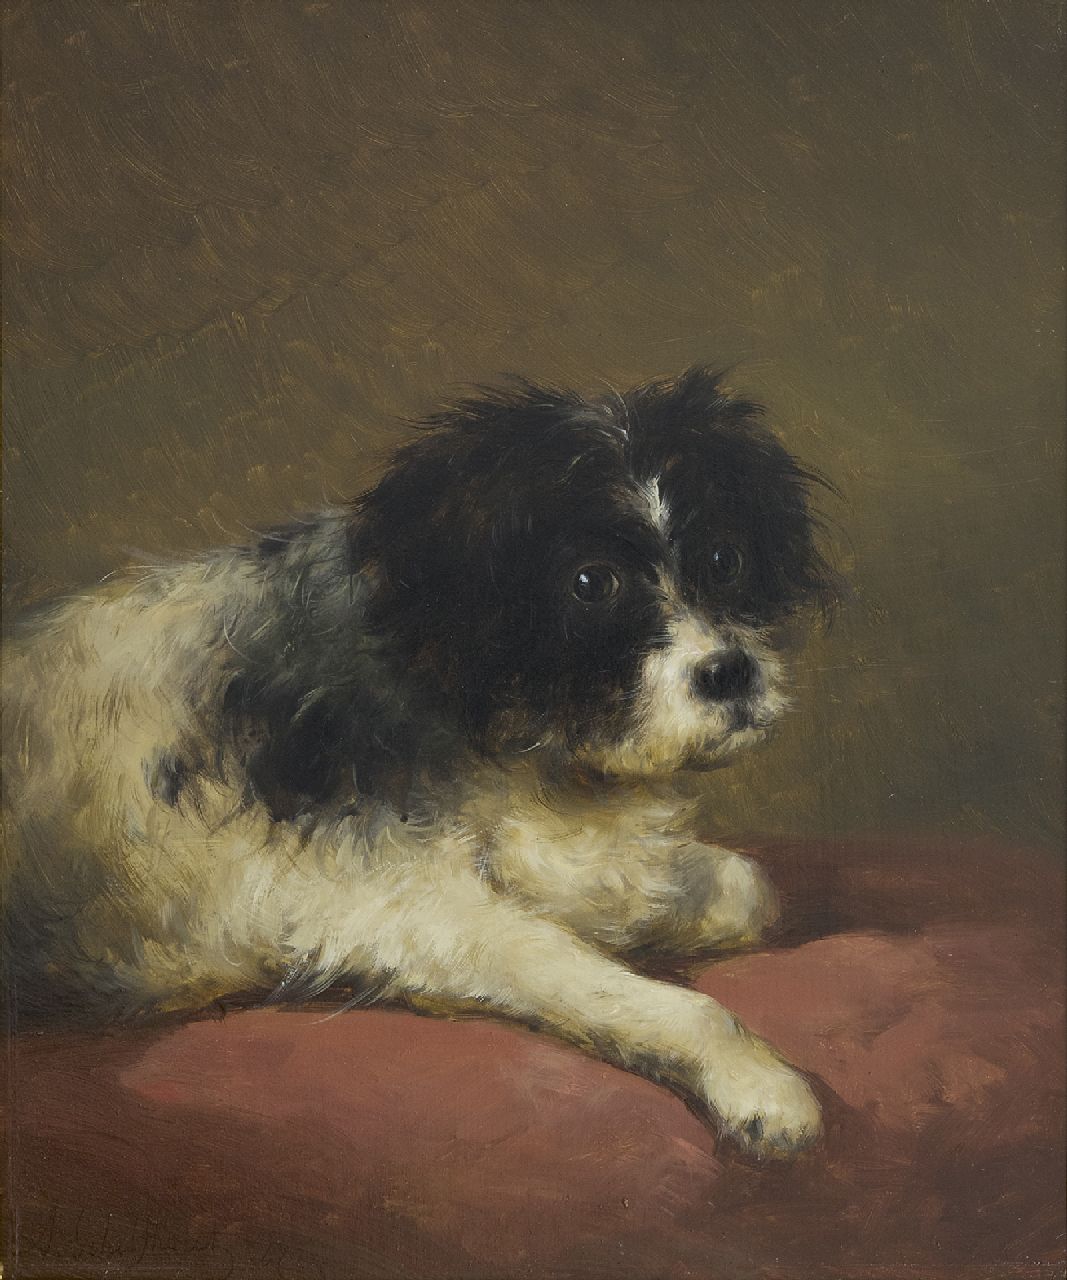 Schelfhout A.  | Andreas Schelfhout, Portret van een hondje liggend op een rood kussen, olieverf op paneel 32,1 x 27,3 cm, gesigneerd linksonder en gedateerd '47